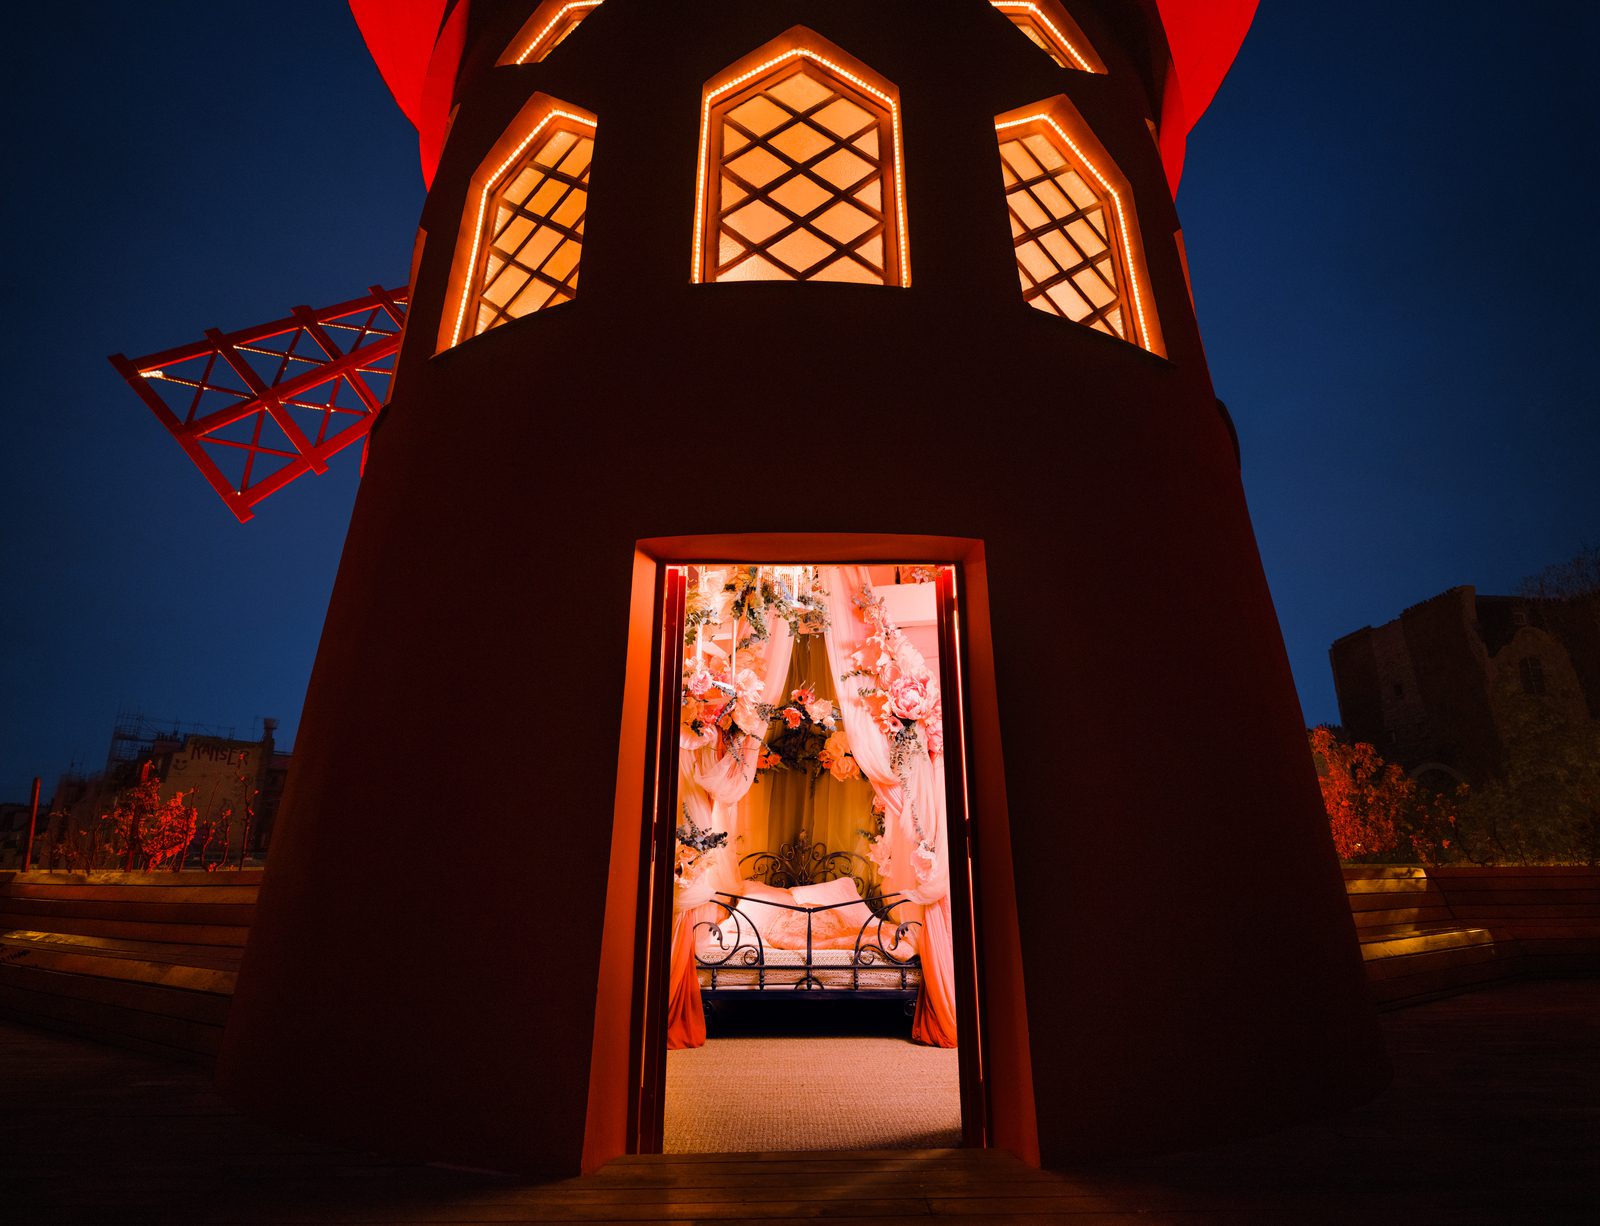 En natt i ett hemligt rum på Moulin Rouge?  Airbnb beviljar din önskan 1 euro